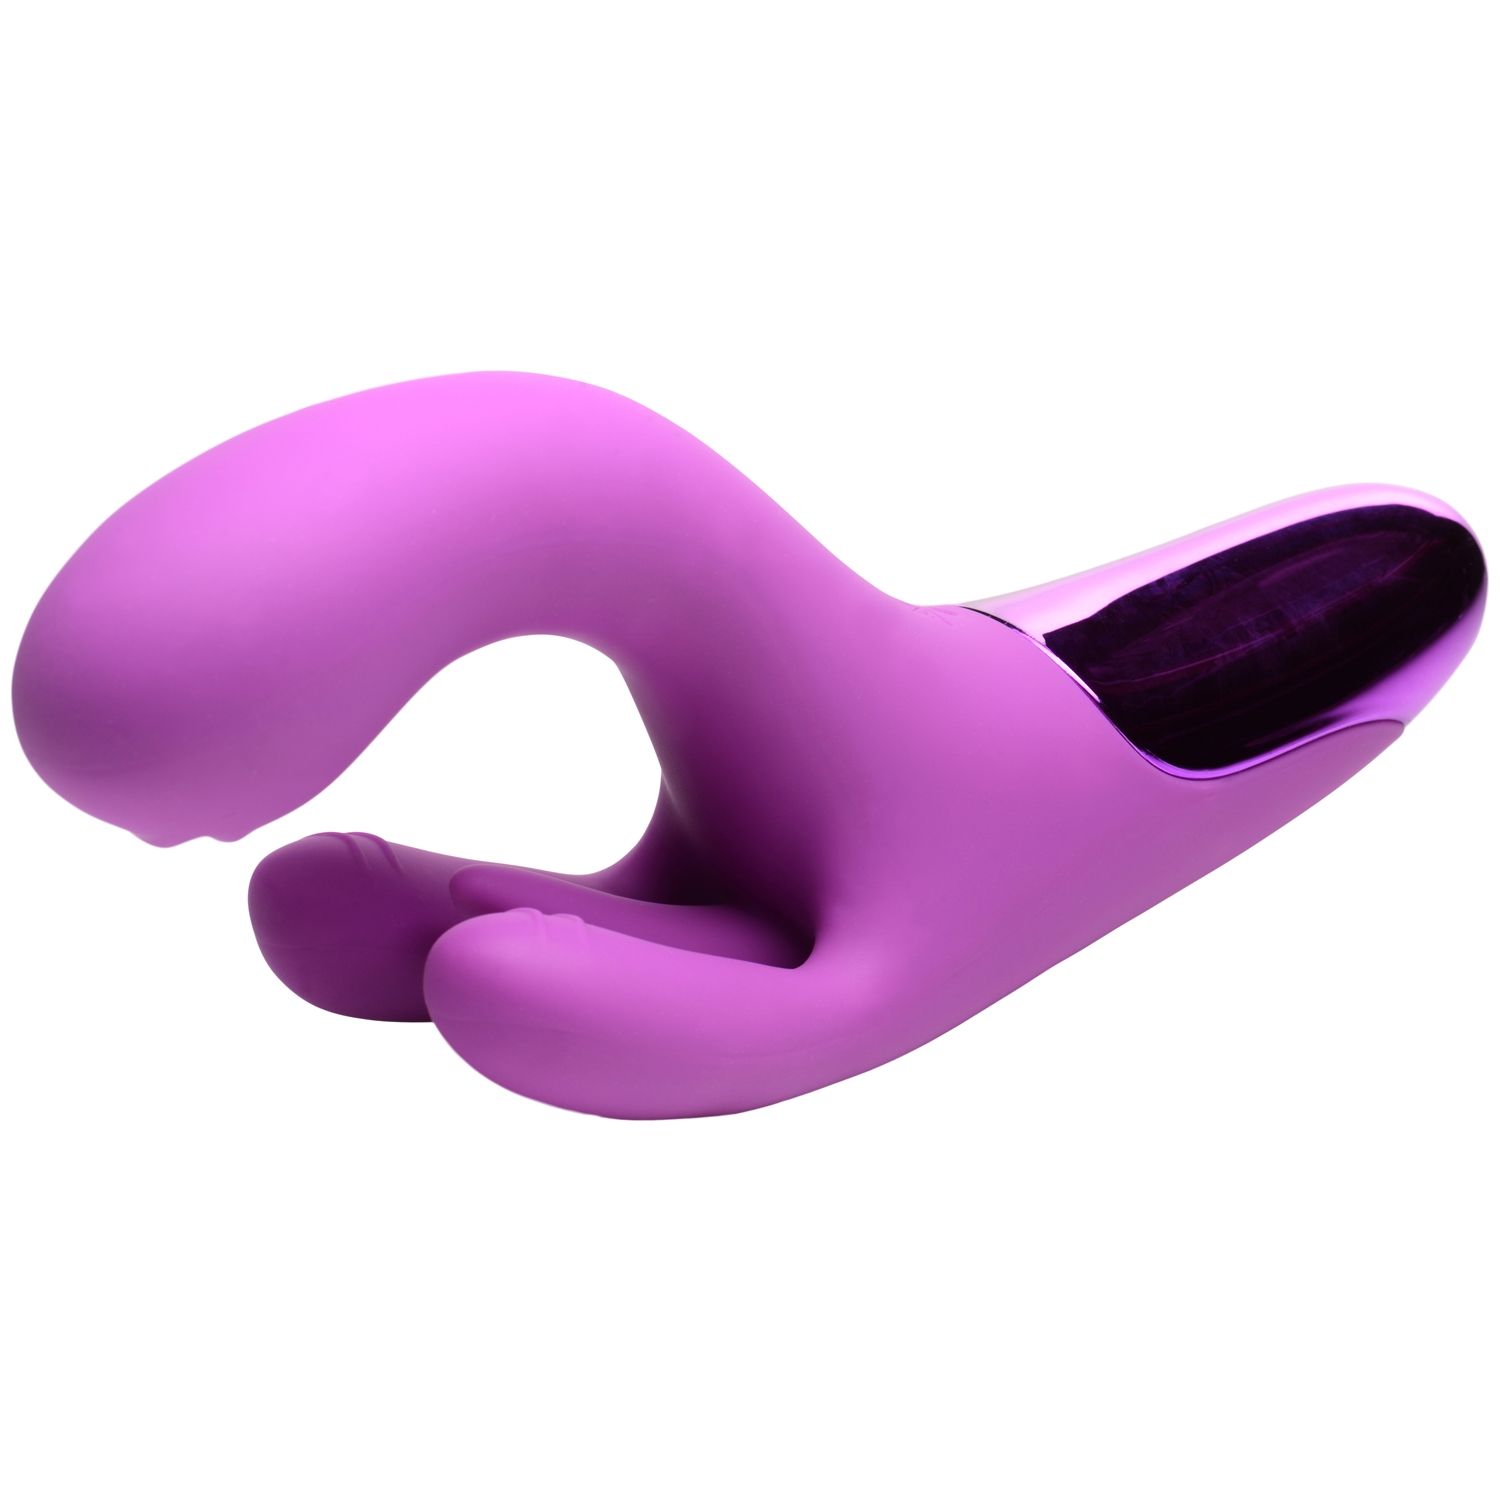 Bang! Purple Triple Rabbit Vibrator - Purple thumbnail